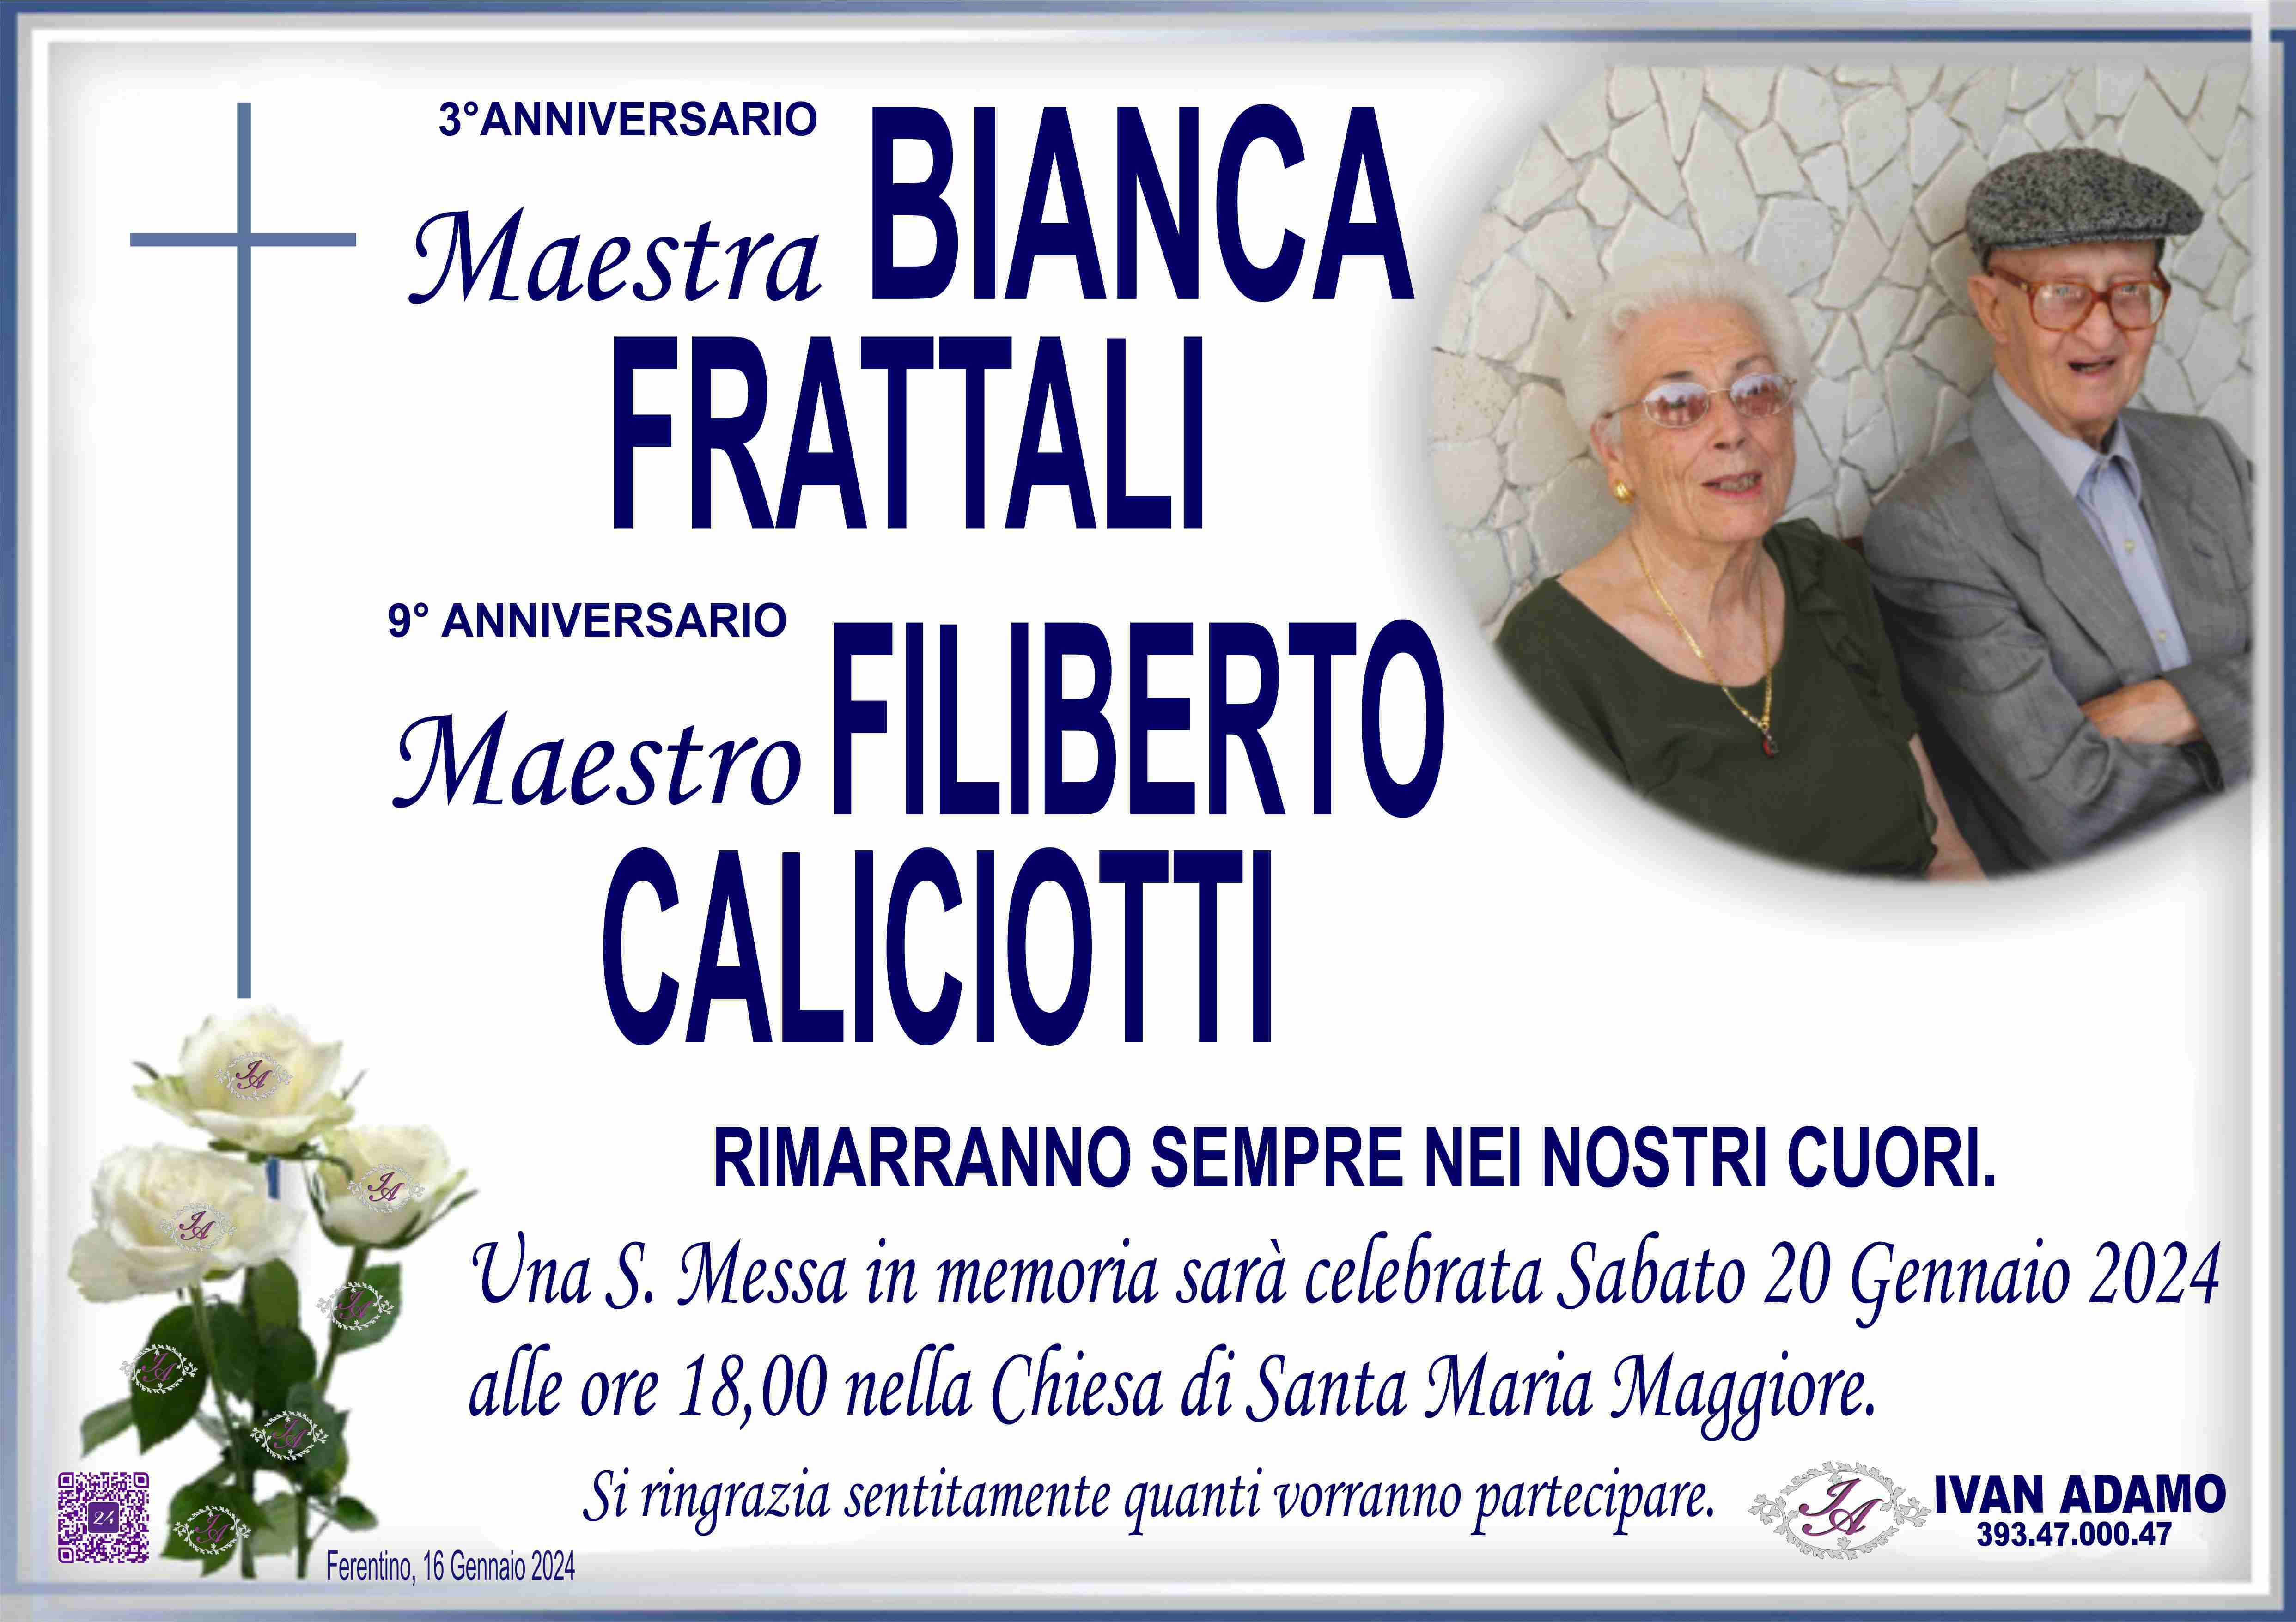 Bianca Frattali - Filiberto Caliciotti